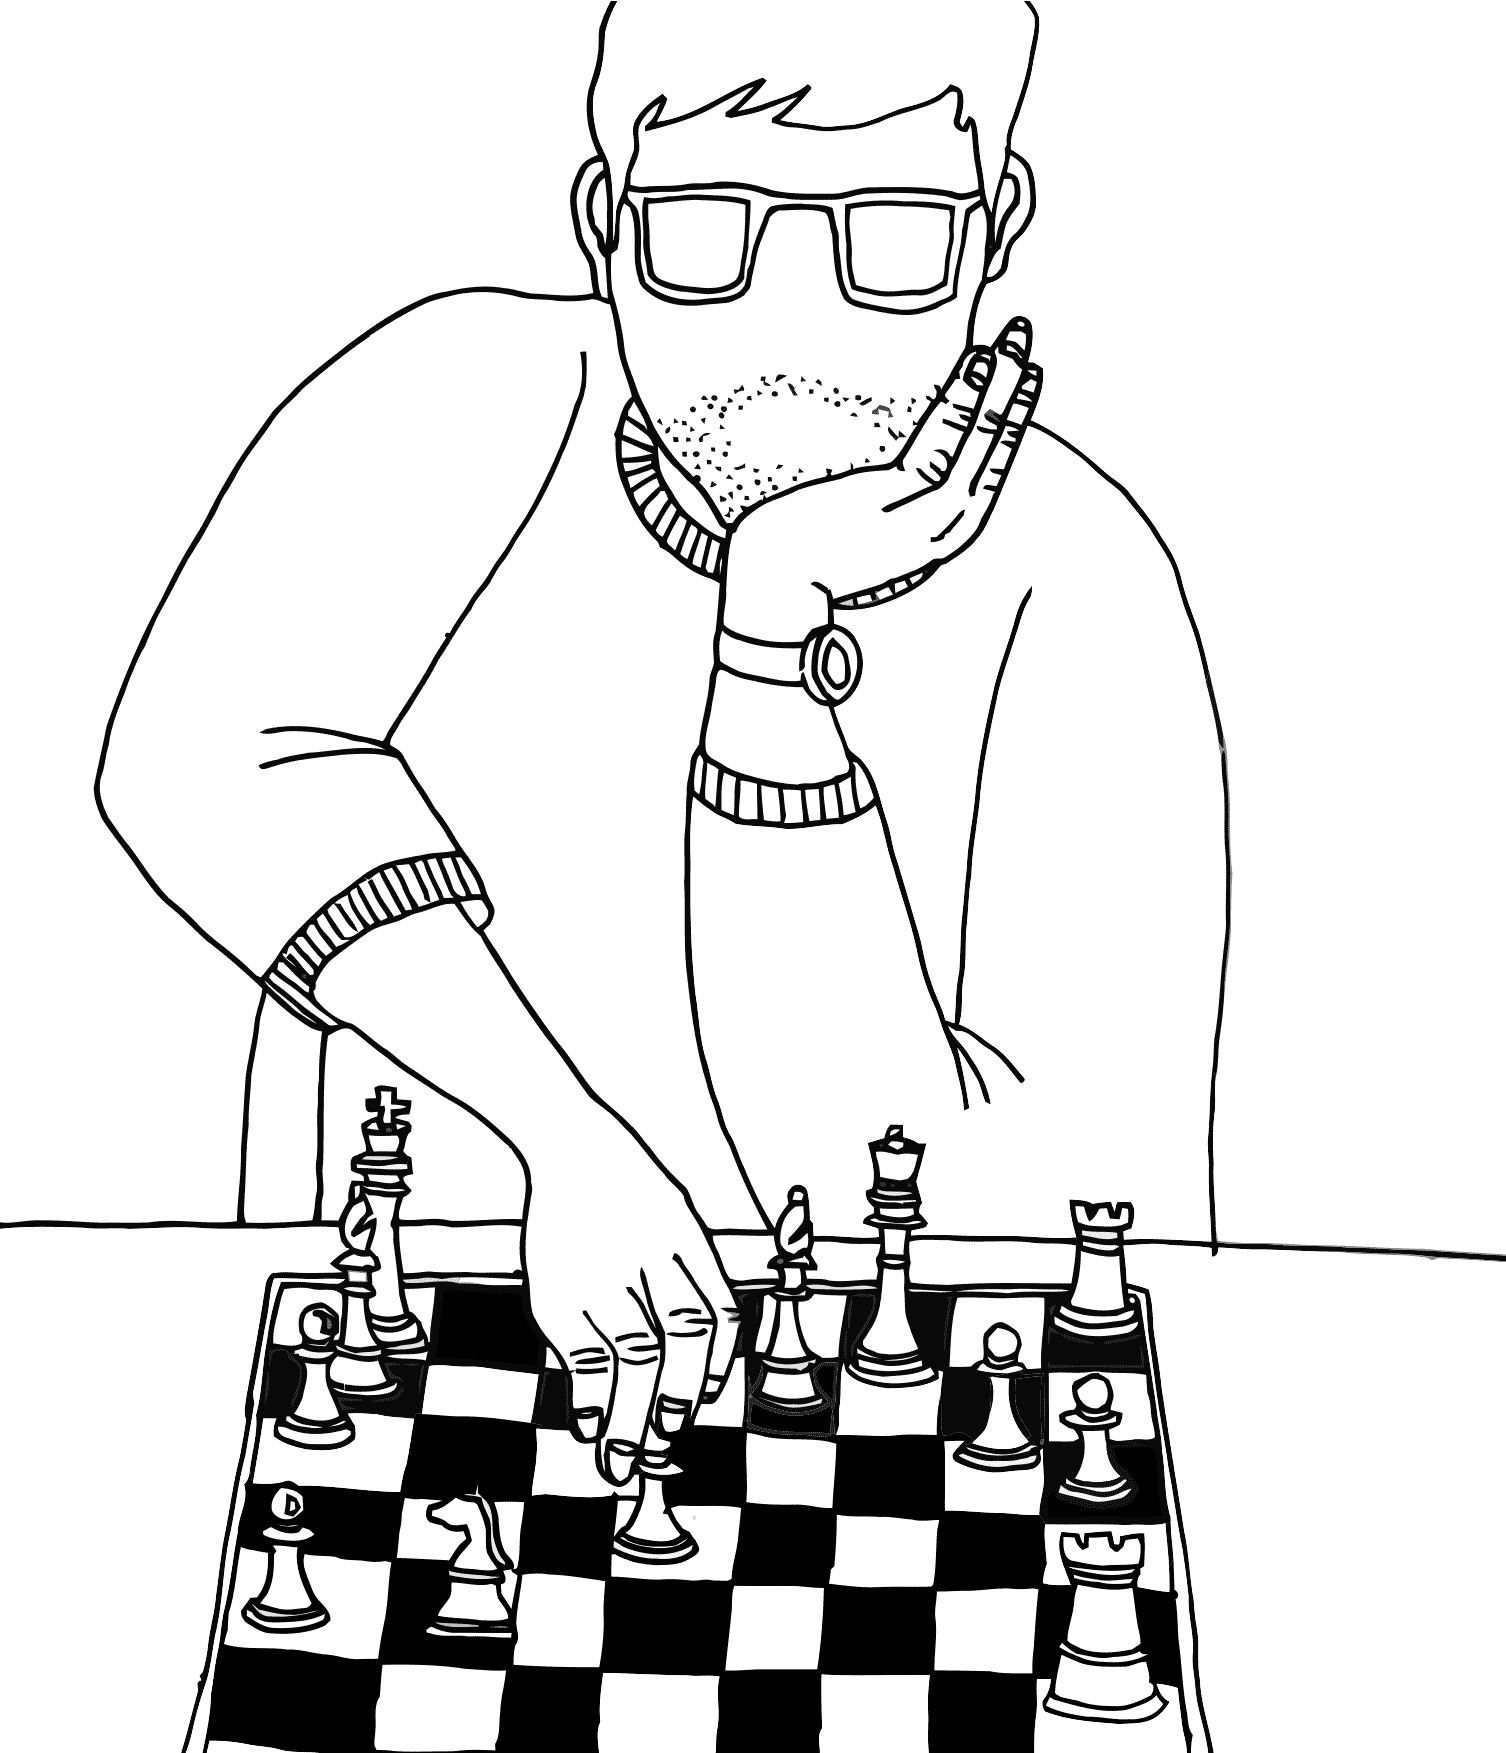 Desenho de Peças do xadrez para colorir - Tudodesenhos